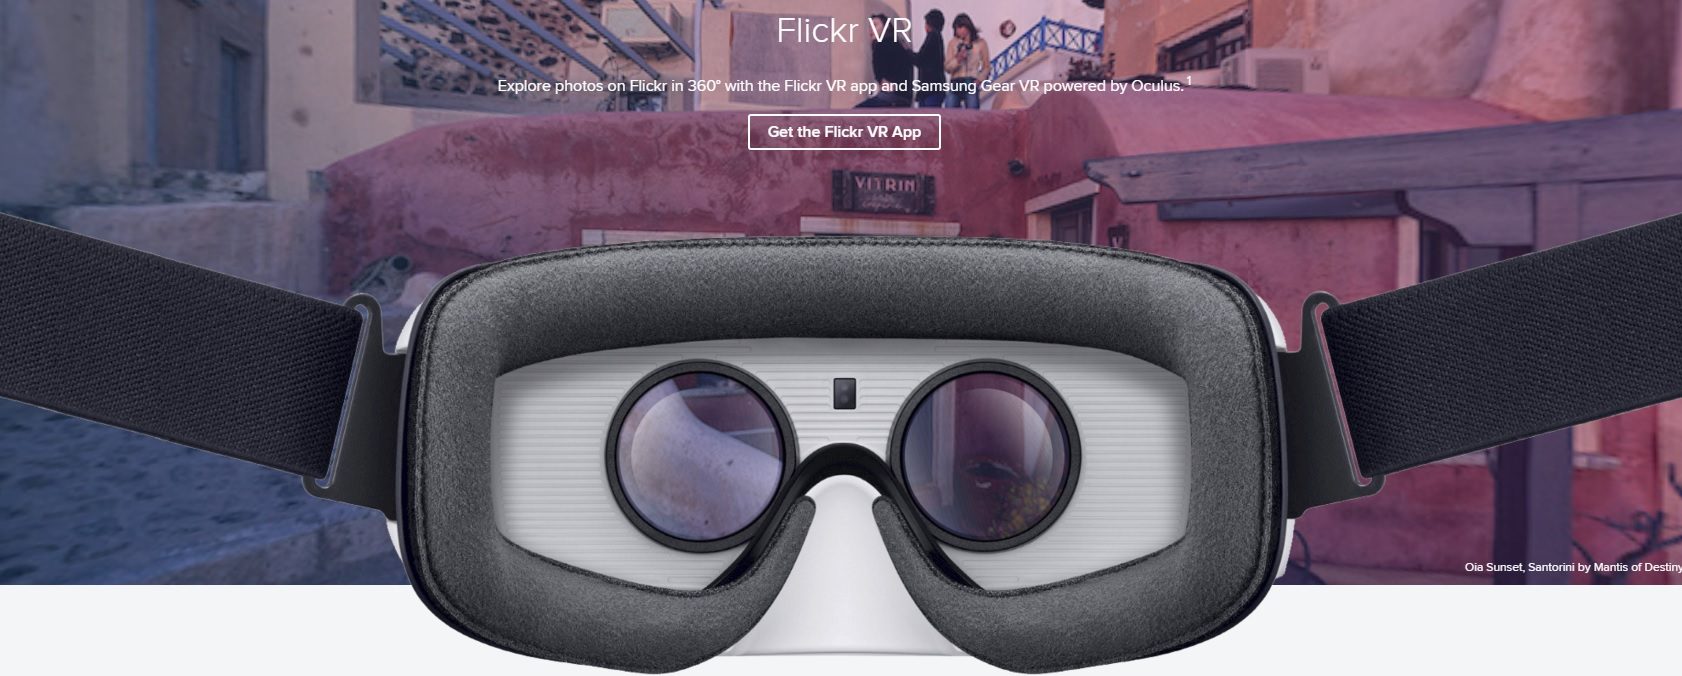 Motley ego fremsætte Flickr VR' 360 Photo App Released for Samsung Gear VR – Road to VR